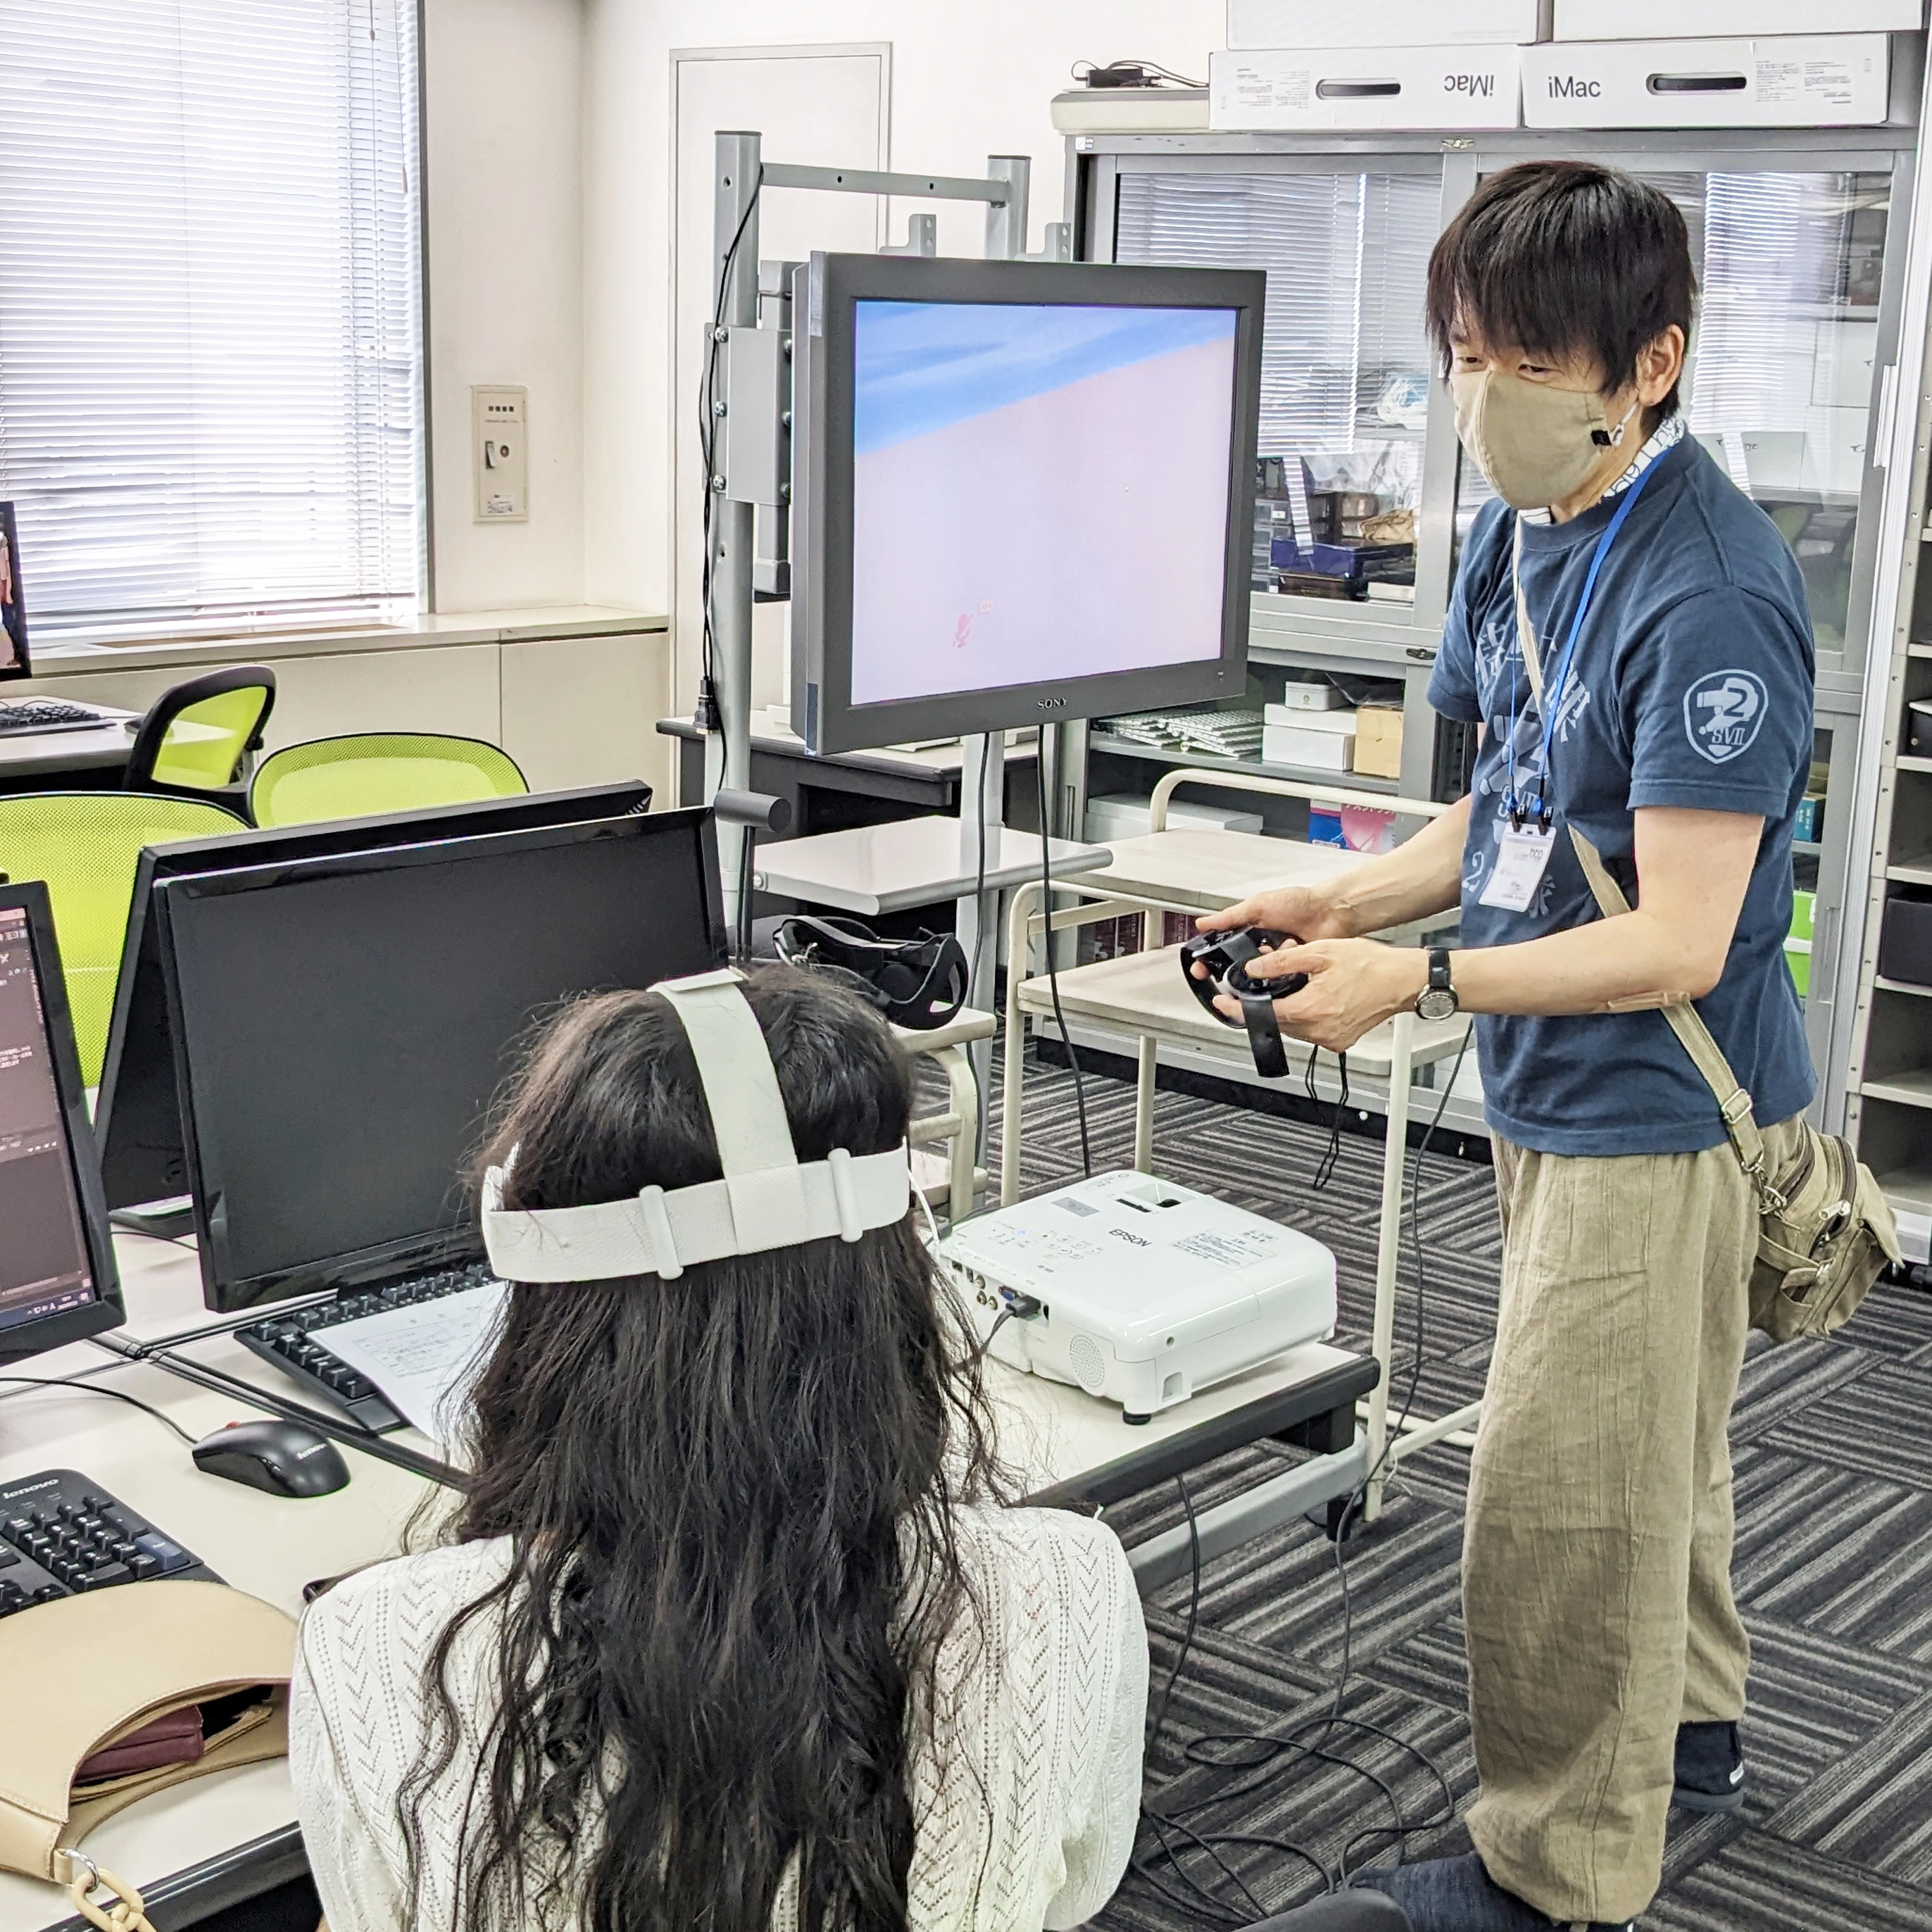 日本コンピュータ専門学校でのメタバースイベント体験の様子